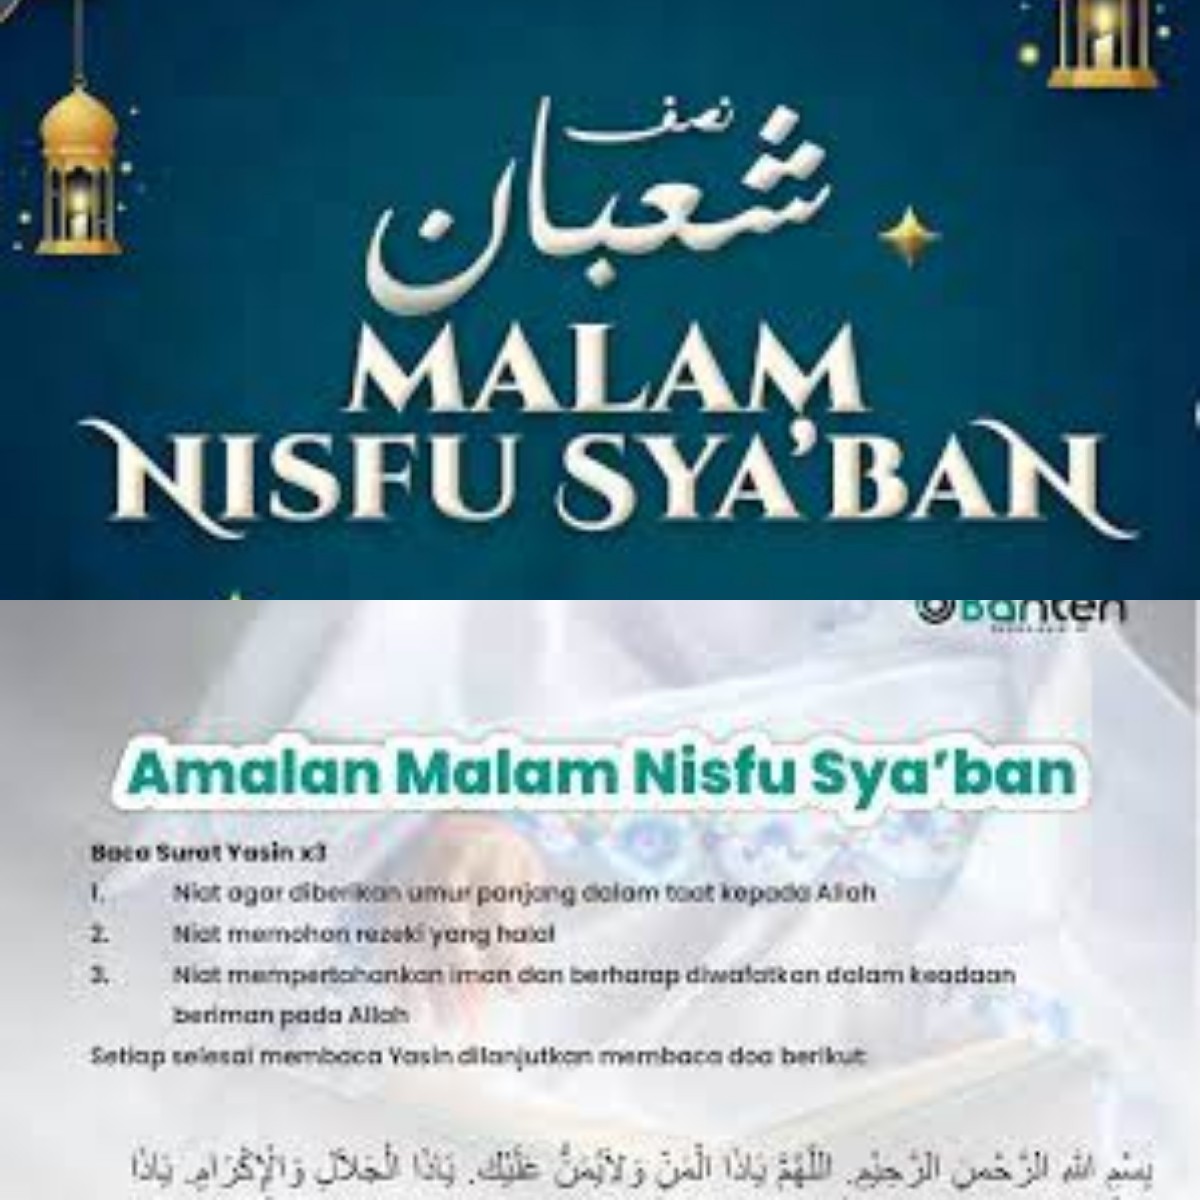 5 Amalan yang Dianjurkan di Malam Nisfu Syaban, InsyaAllah Rezeki Lancar Sepanjang Tahun! 